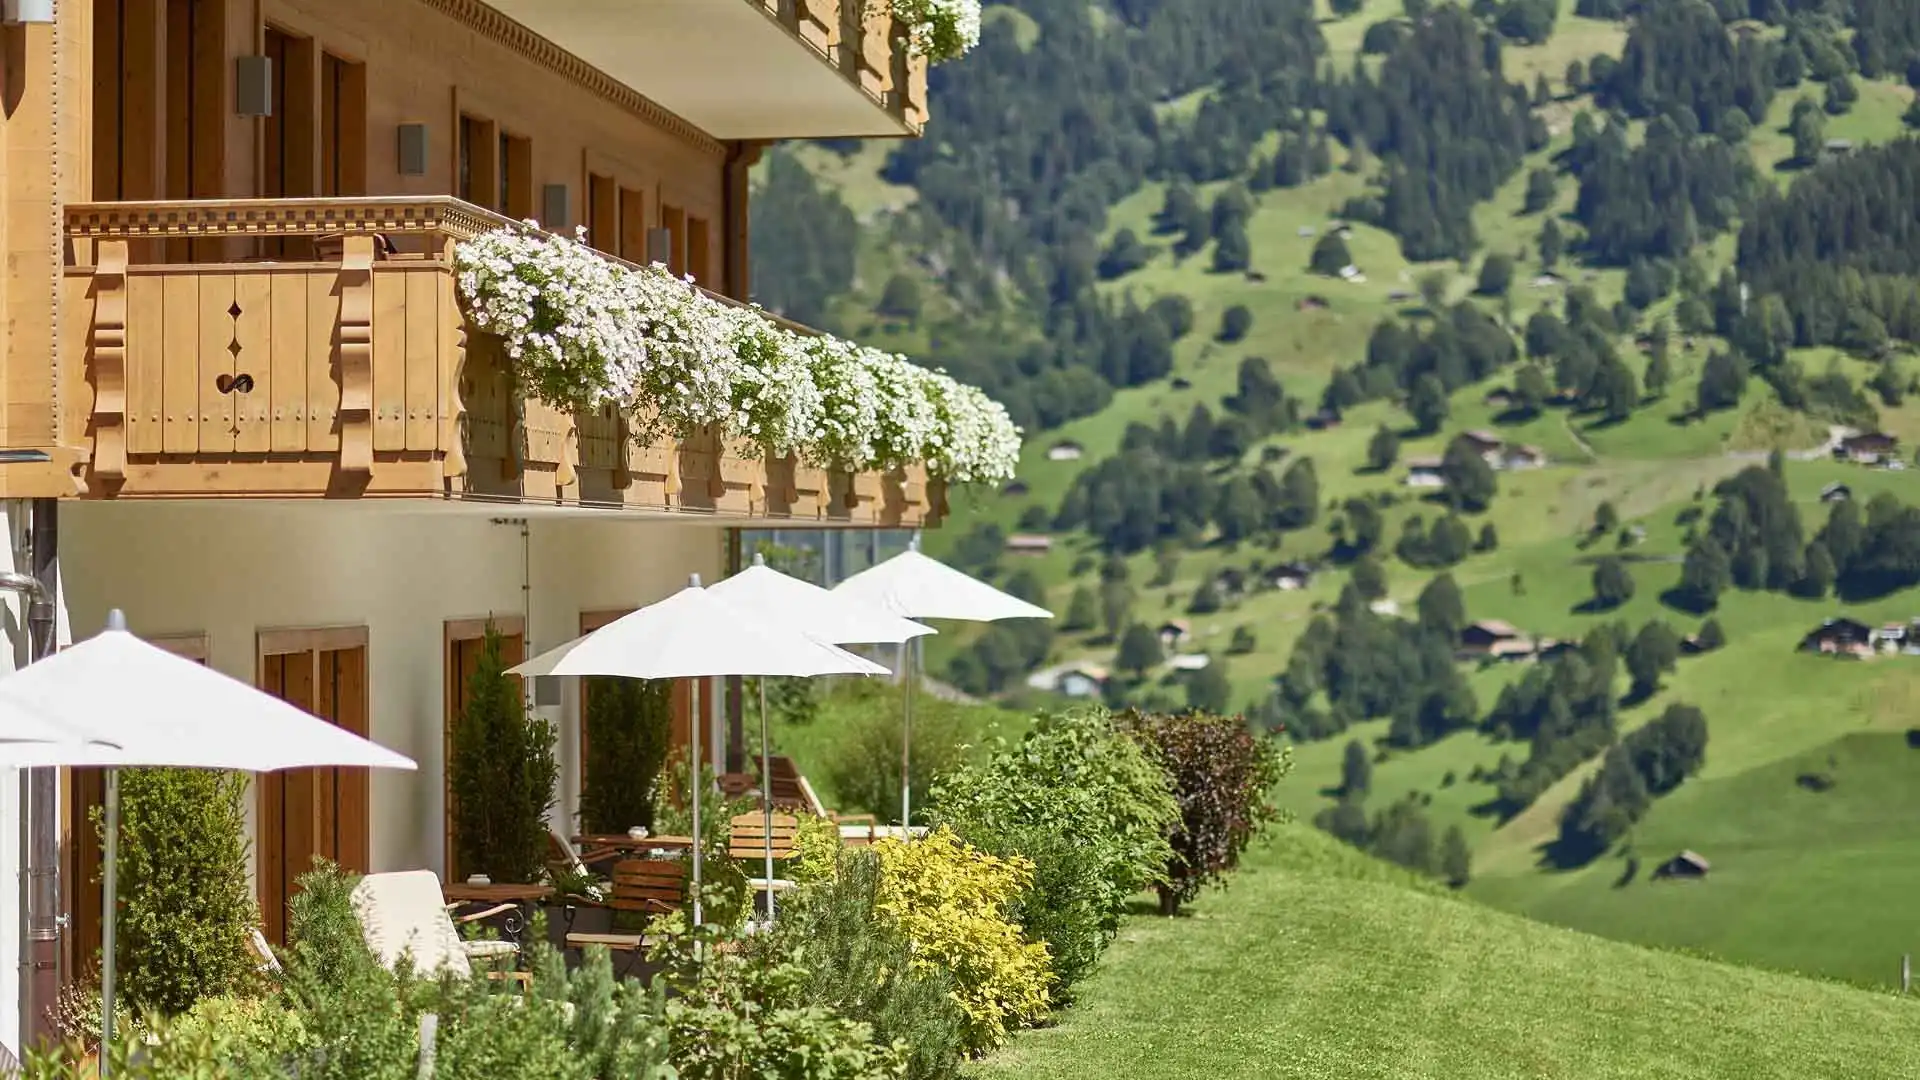 Hôtel Aspen Grindelwald - slide